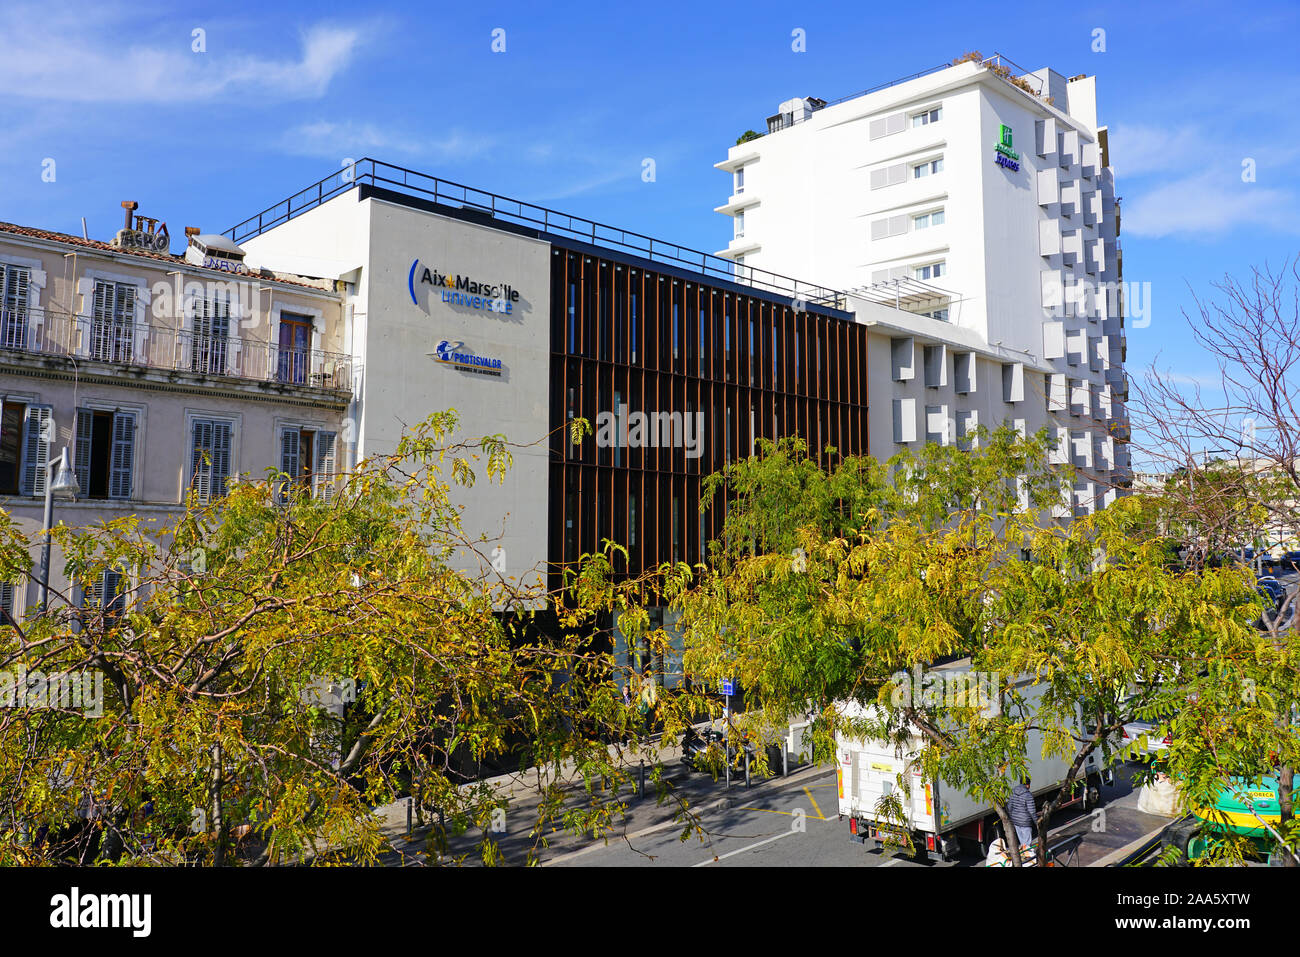 MARSEILLE, FRANCE -13 nov 2019- Vue sur le campus Saint-Charles de l'Université Aix Marseille Universite près de la gare à Marseille, Franc Banque D'Images